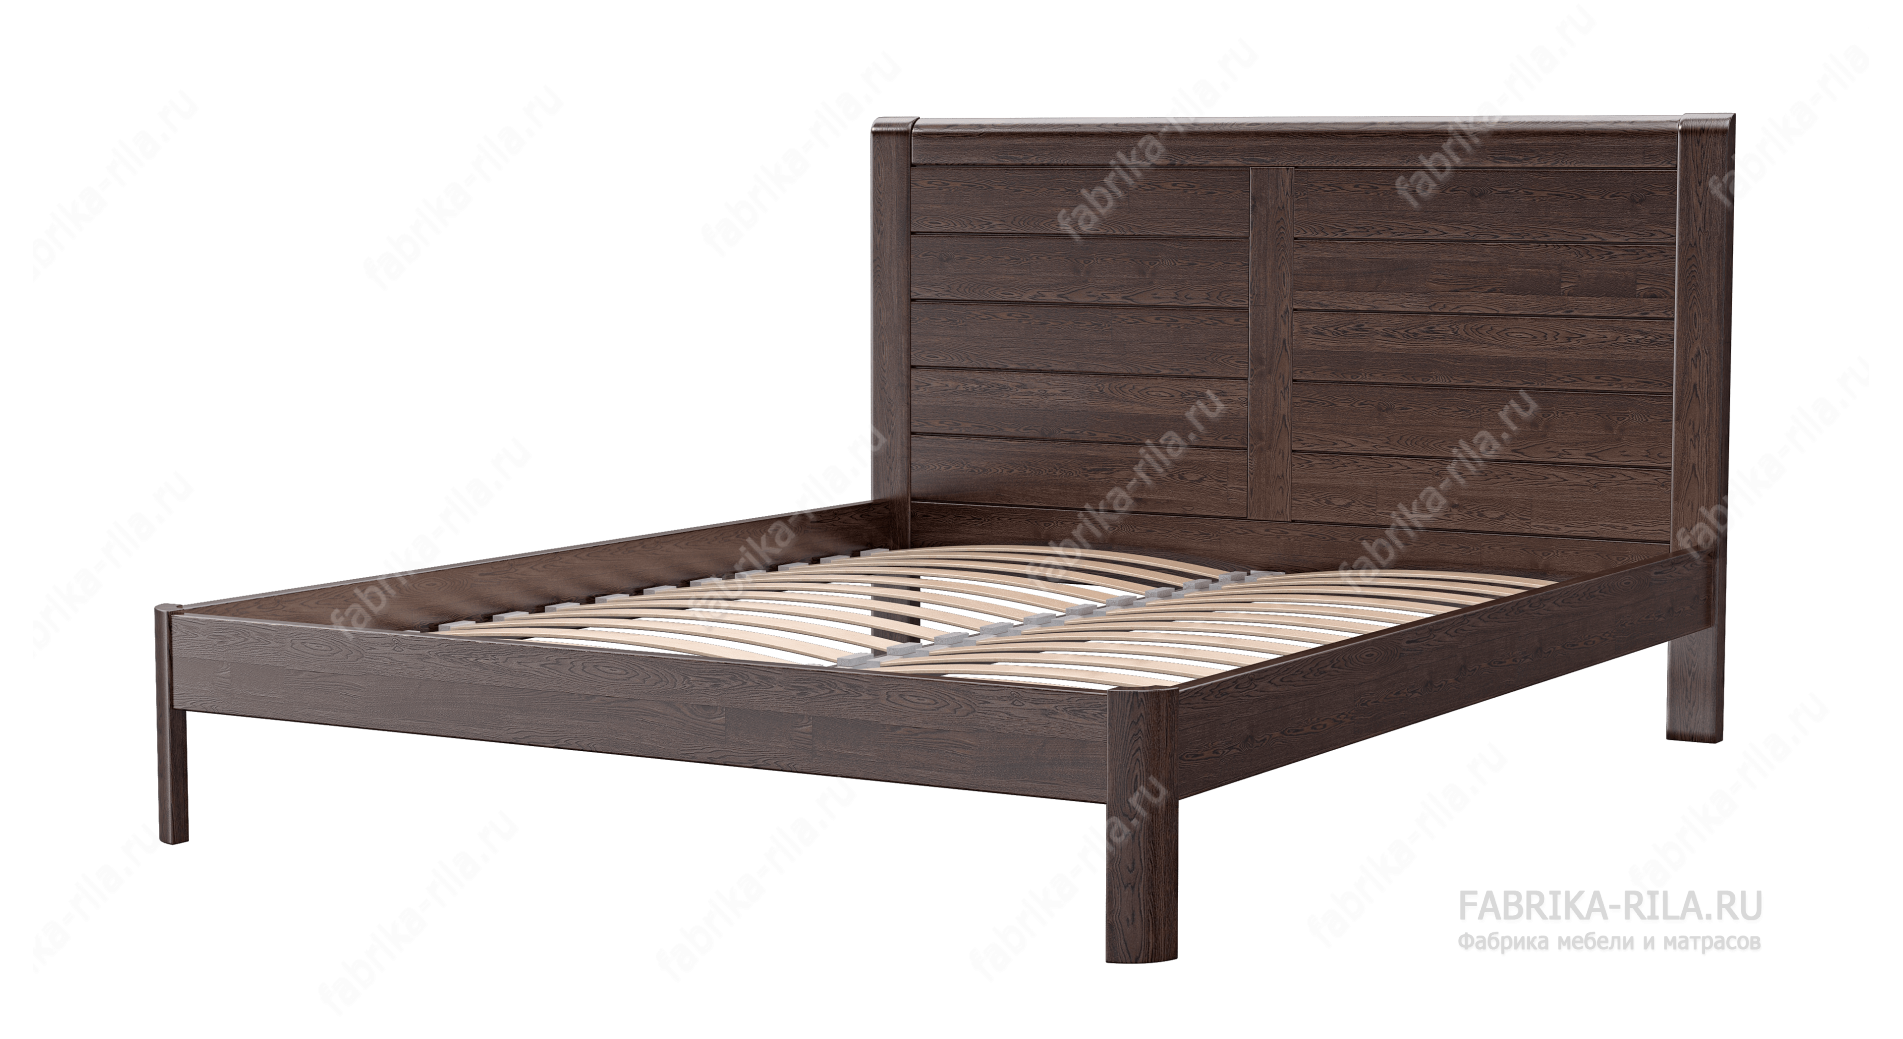 Кровать Riviera — 90x190 см. из сосны